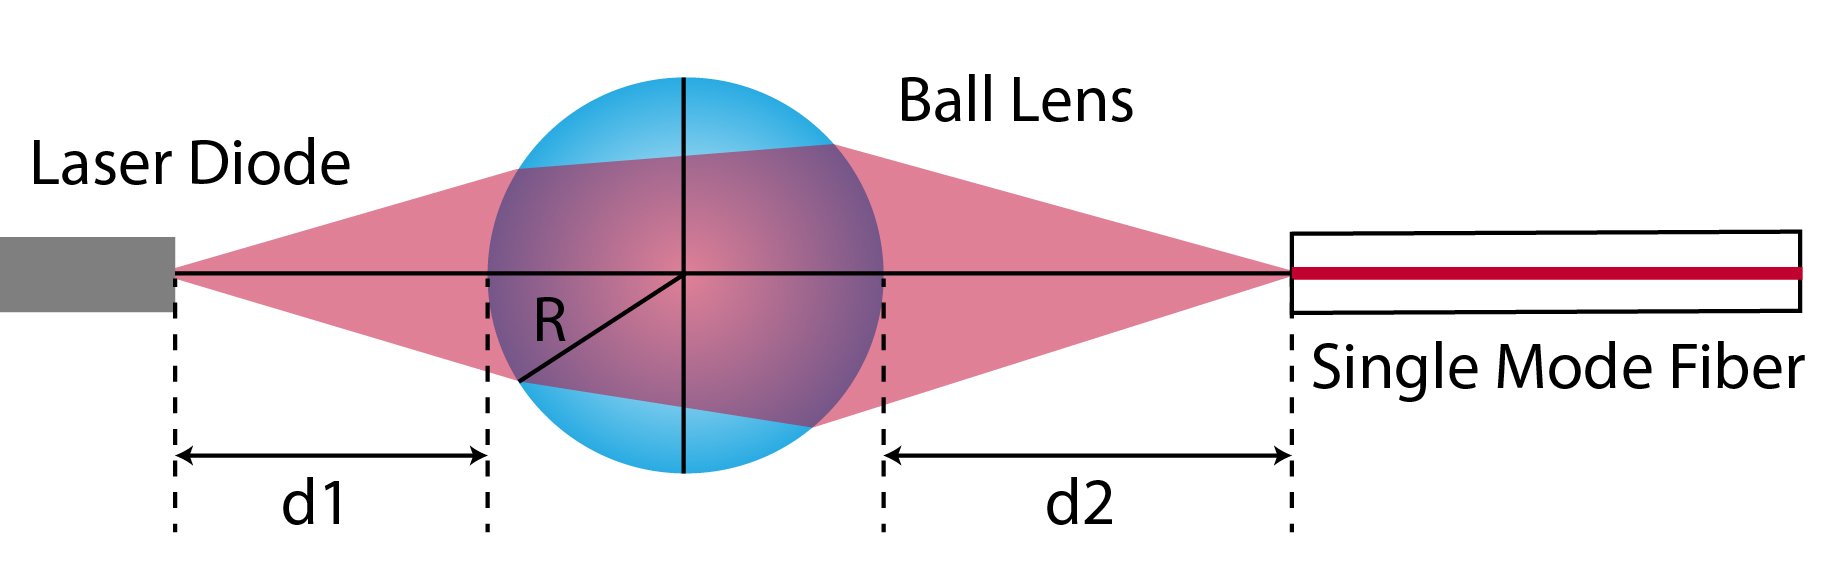 Ball lens